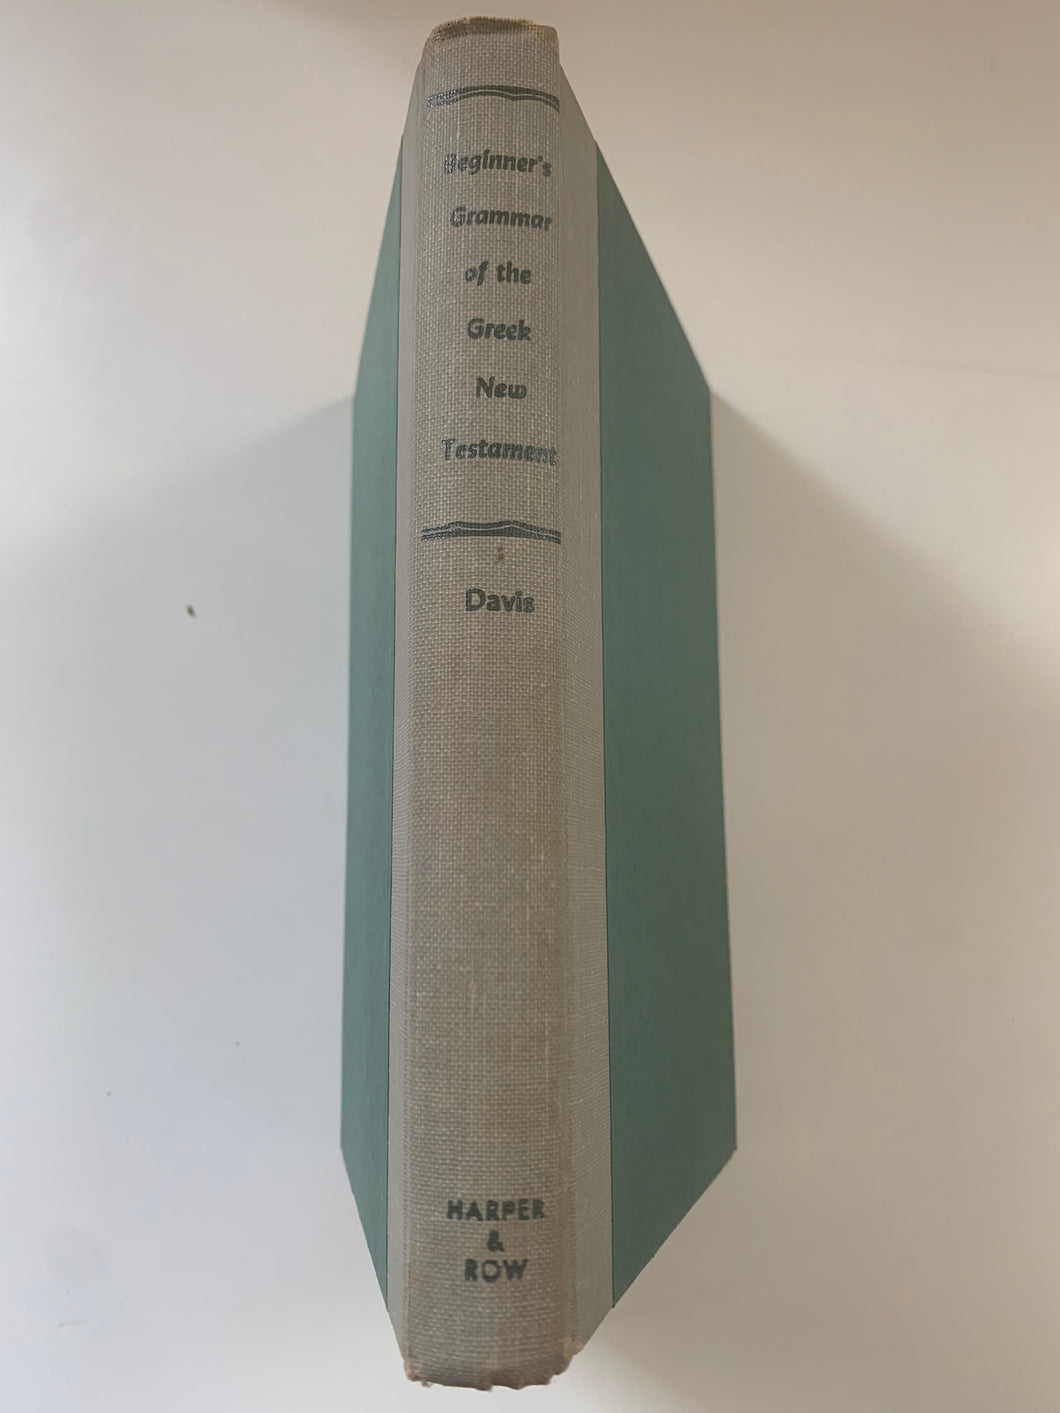 Beginner's Grammar of the Greek New Testament by William Hersey Davis